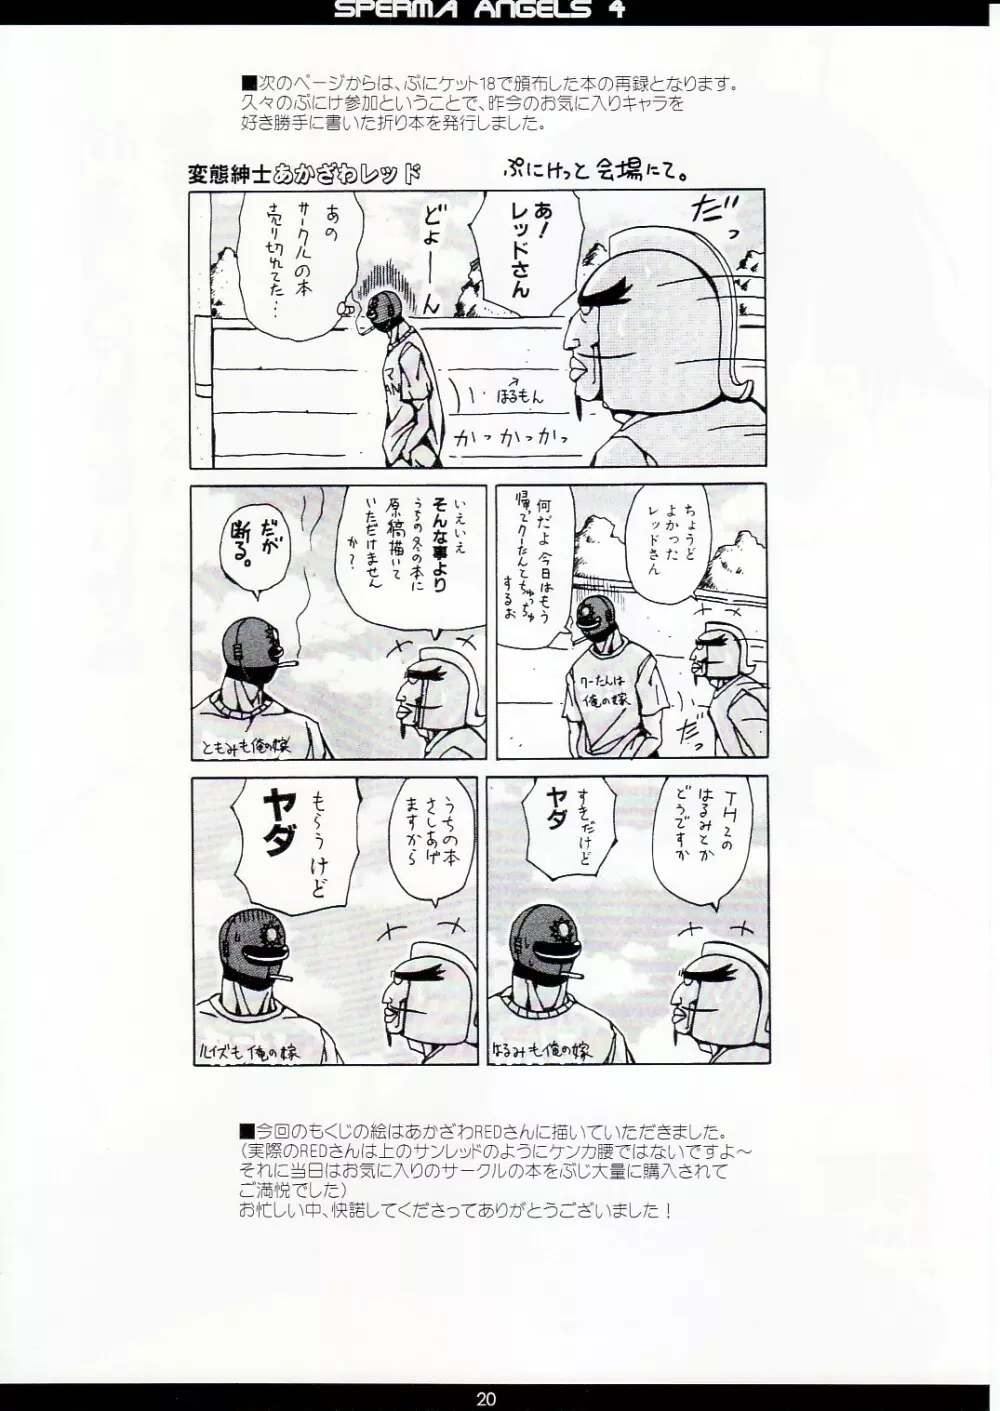 精飲天使 4 Sperma Angels - page21